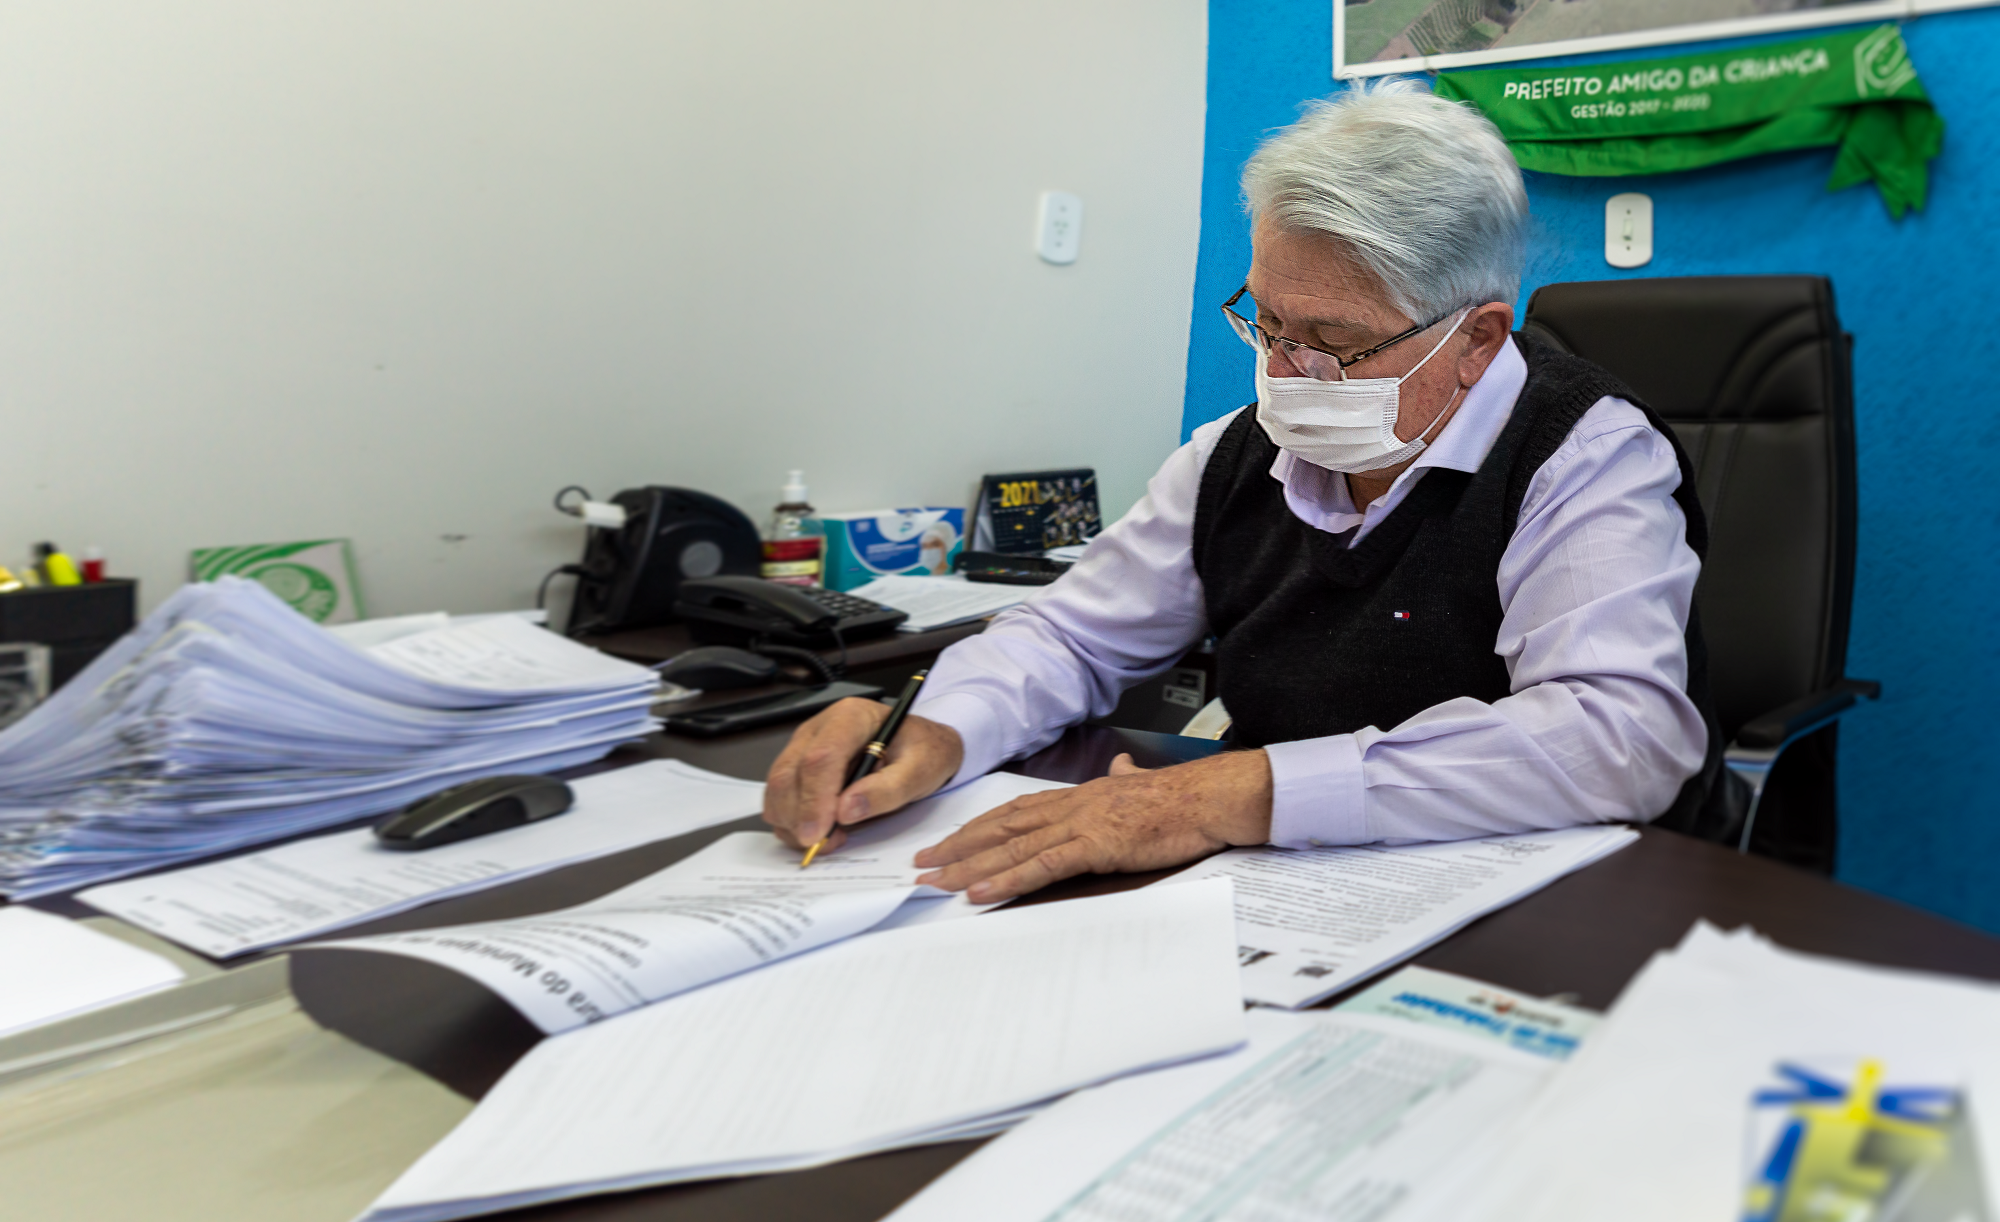 Prefeito Bica assina documentos em sua sala. Foto: Luís Fernando da Silva / Prefeitura Municipal de Urupês